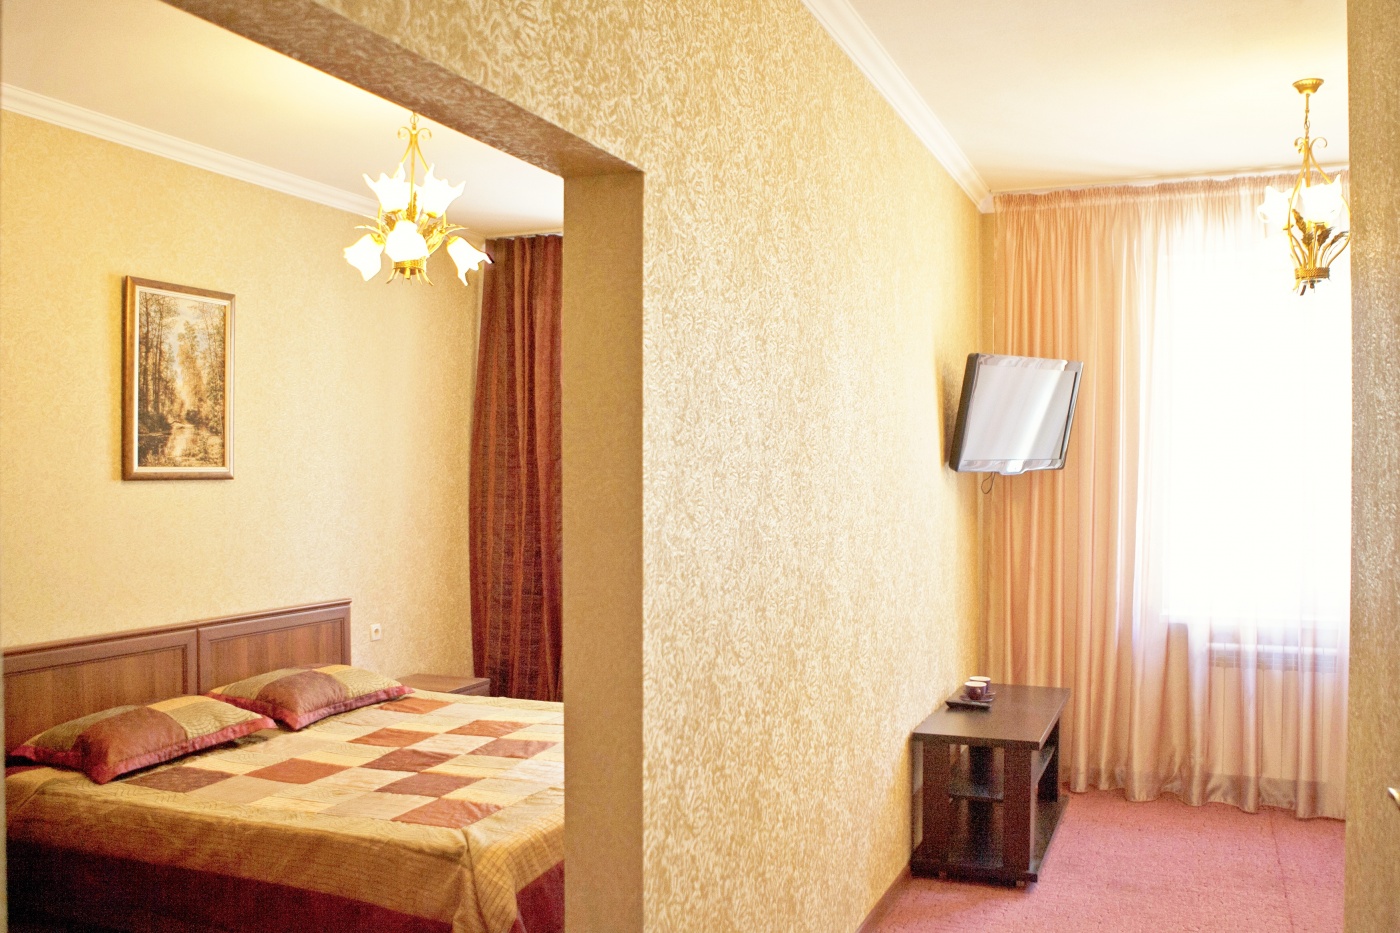  Отель «Салам» Кабардино-Балкарская Республика Комфорт двухкомнатный, фото 1